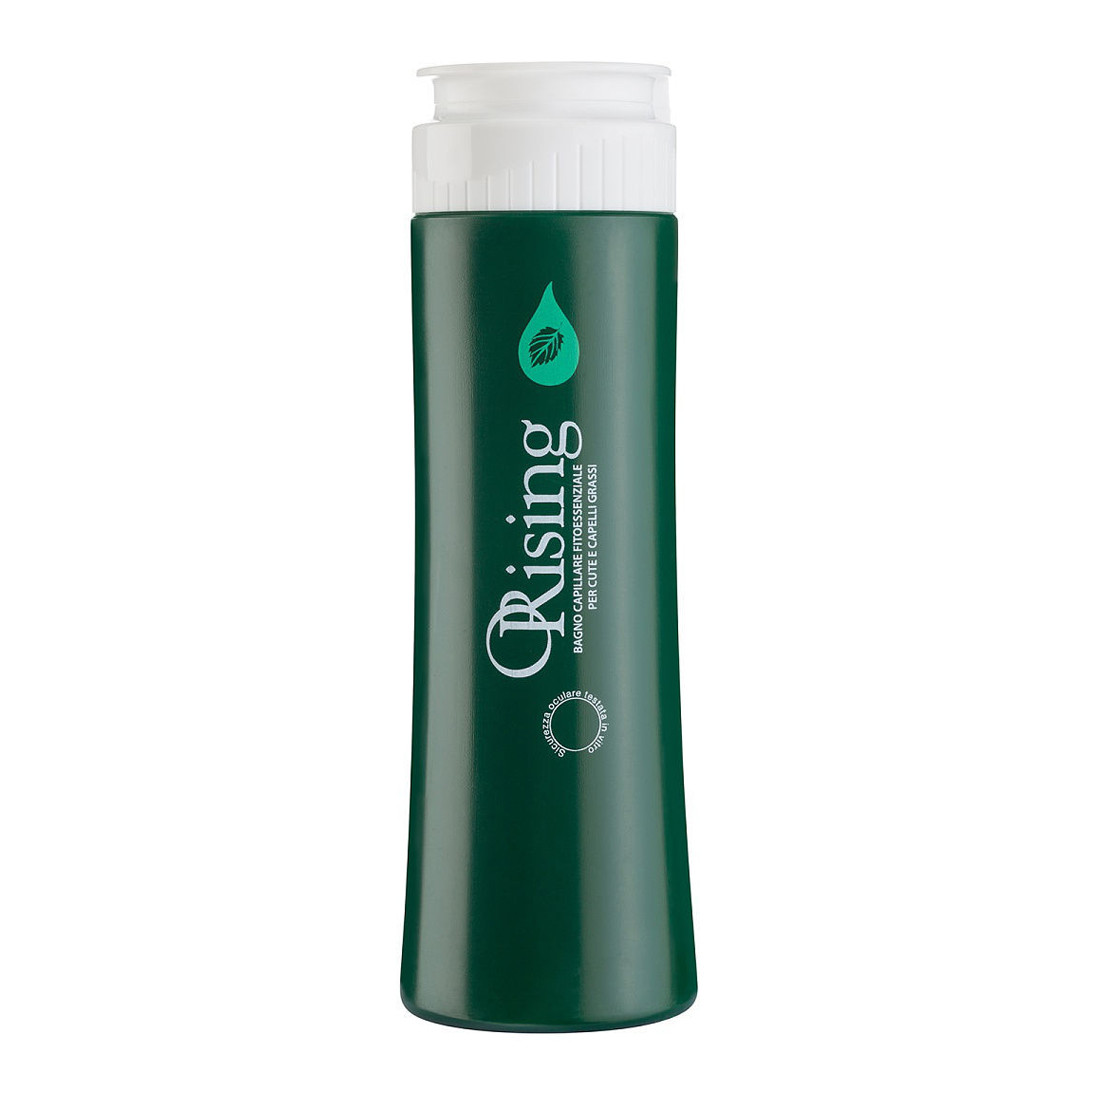 Отзывы о Orising Grassa Shampoo Фитоэссенциальный шампунь для жирных волос